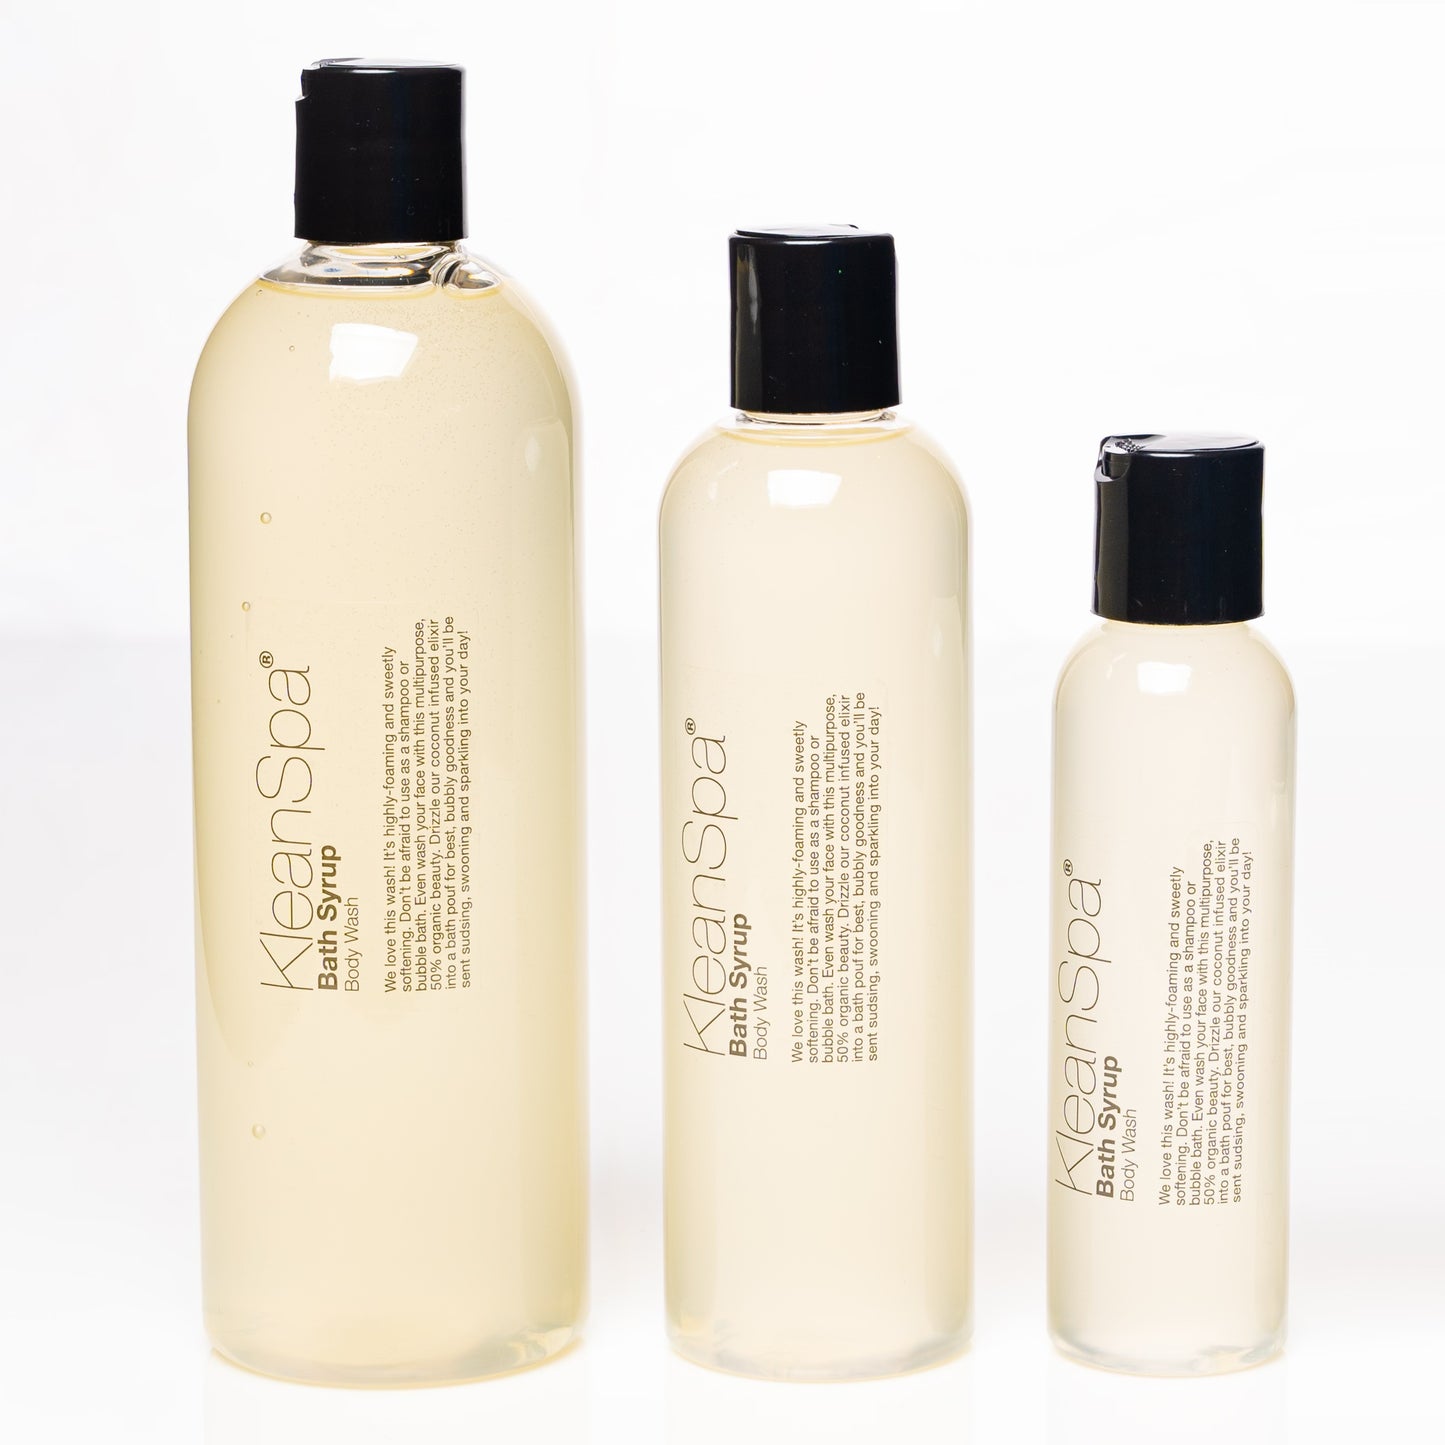 Body Wash: Sugared Plum Blossom Bath Syrup